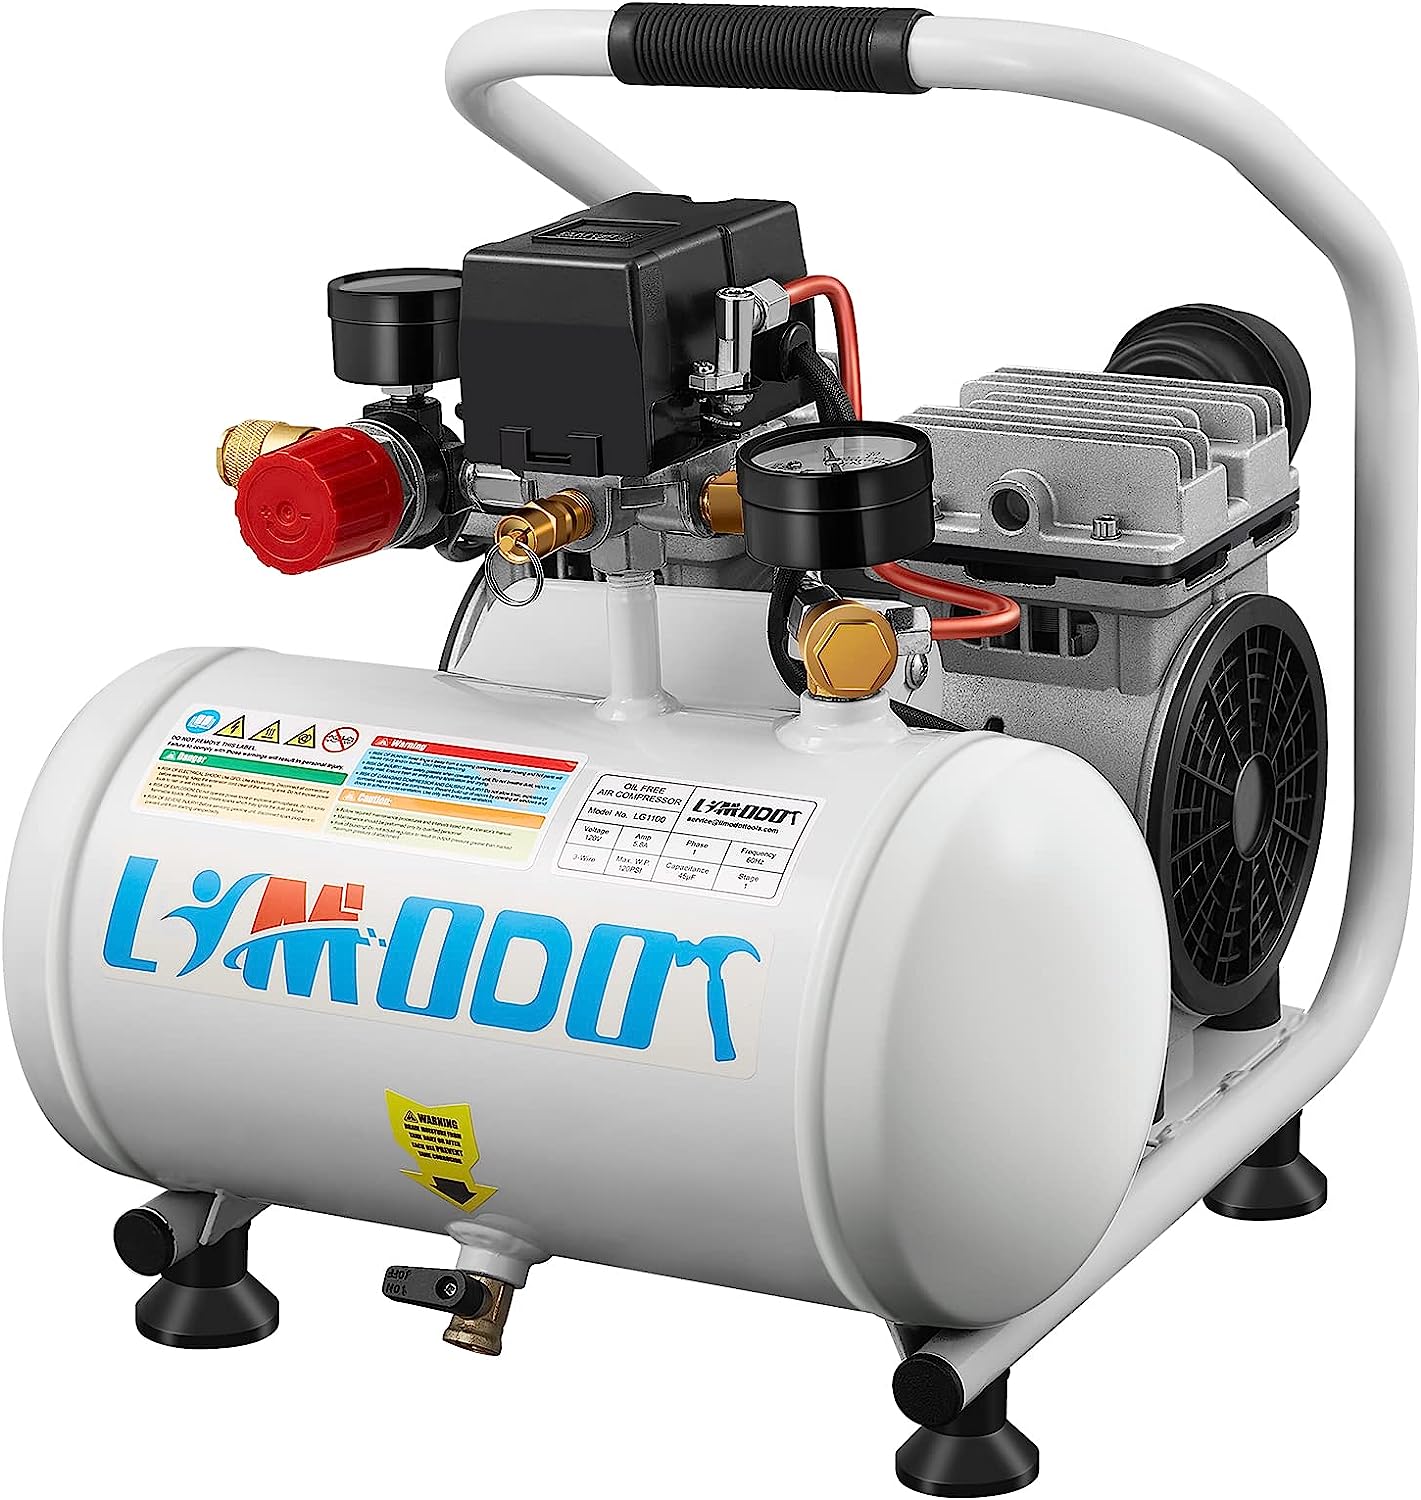 Limodot Ultra Quiet Air Compressor Portable1